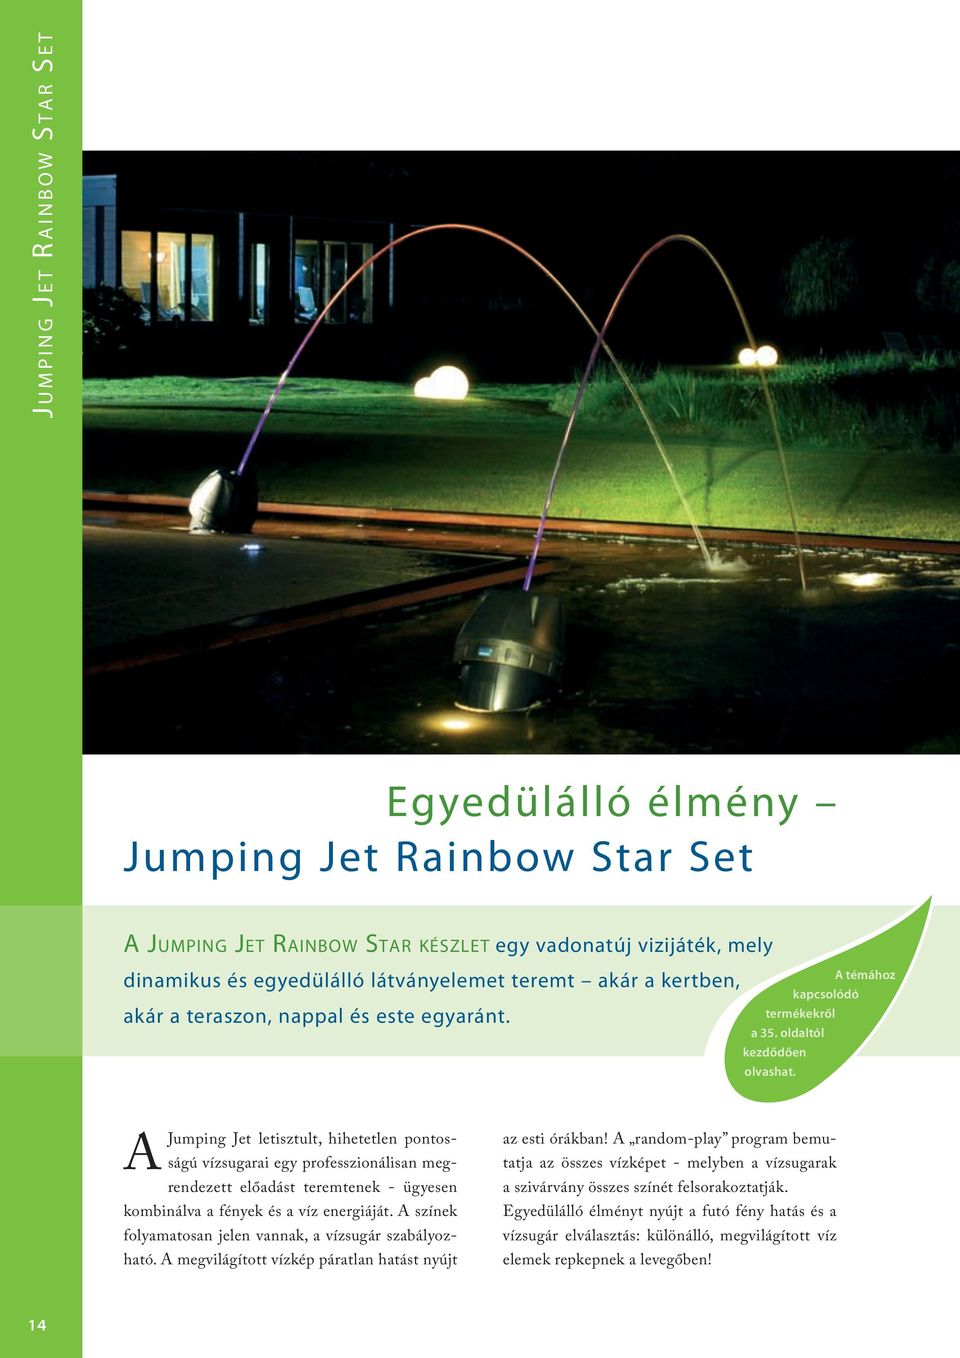 A témához kapcsolódó A Jumping Jet letisztult, hihetetlen pontosságú vízsugarai egy professzionálisan megrendezett előadást teremtenek - ügyesen kombinálva a fények és a víz energiáját.